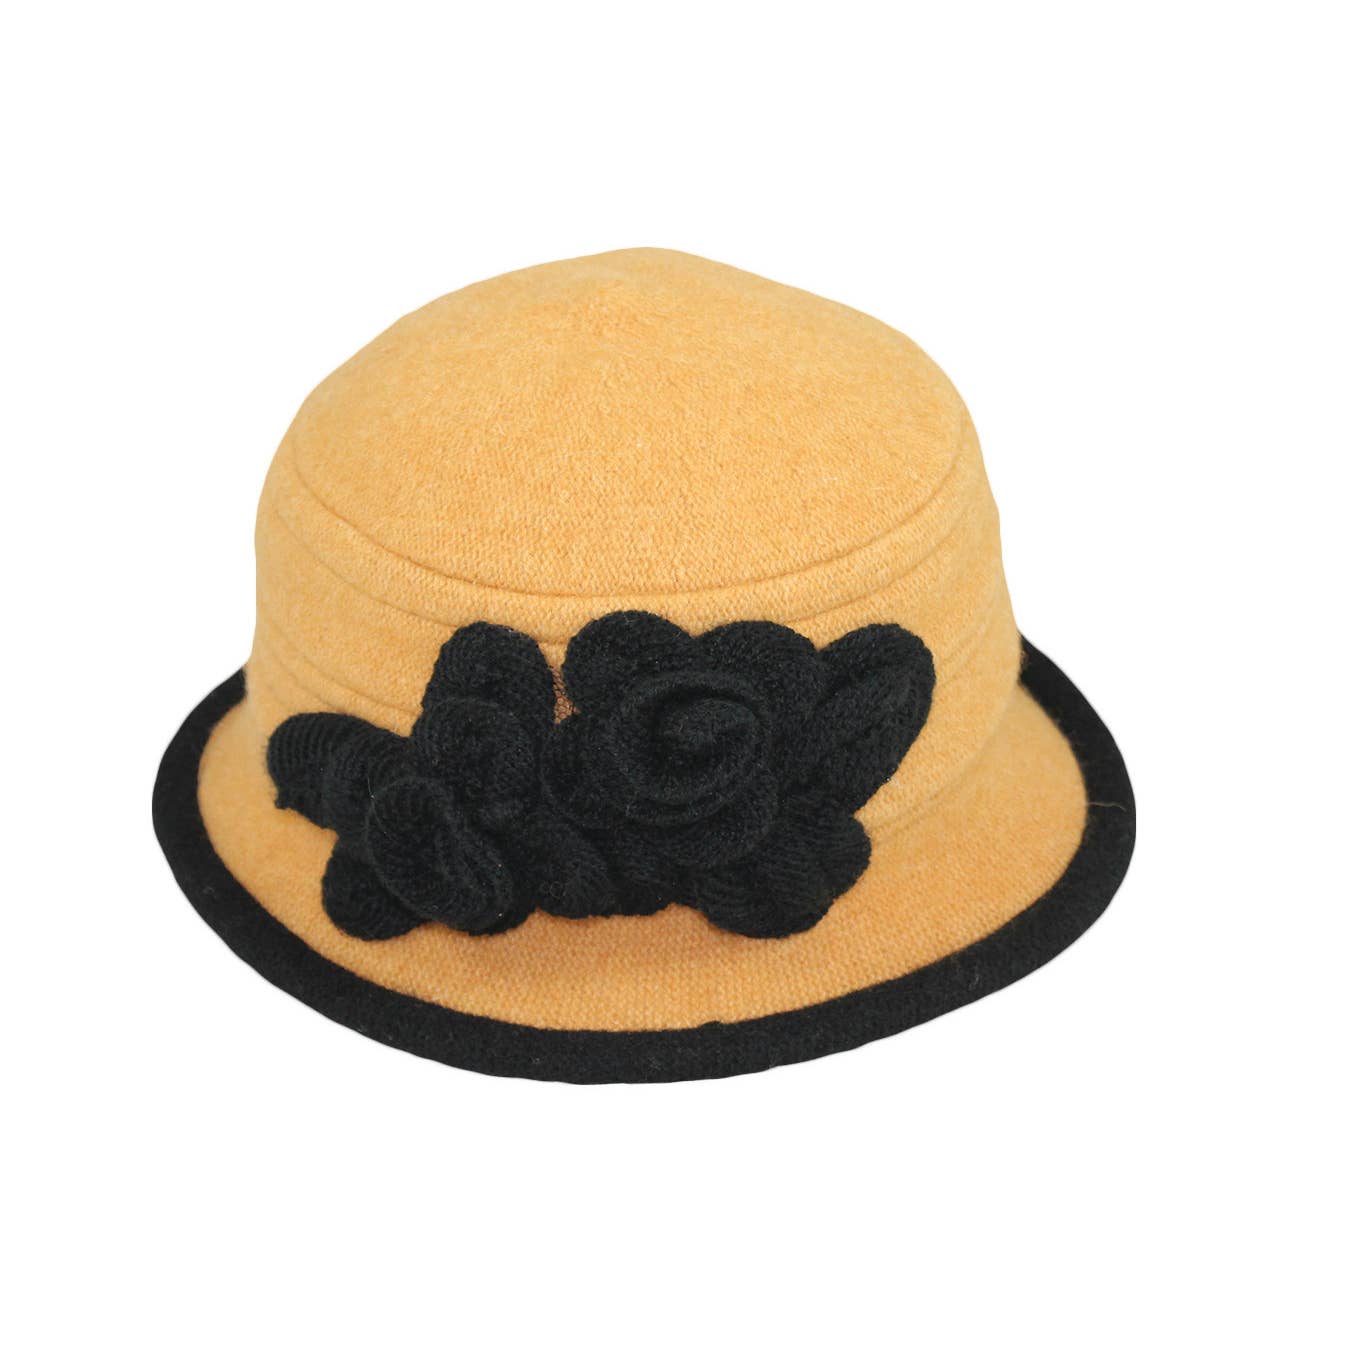 Women's Winter Hat. Boiled Wool Bucket Hat